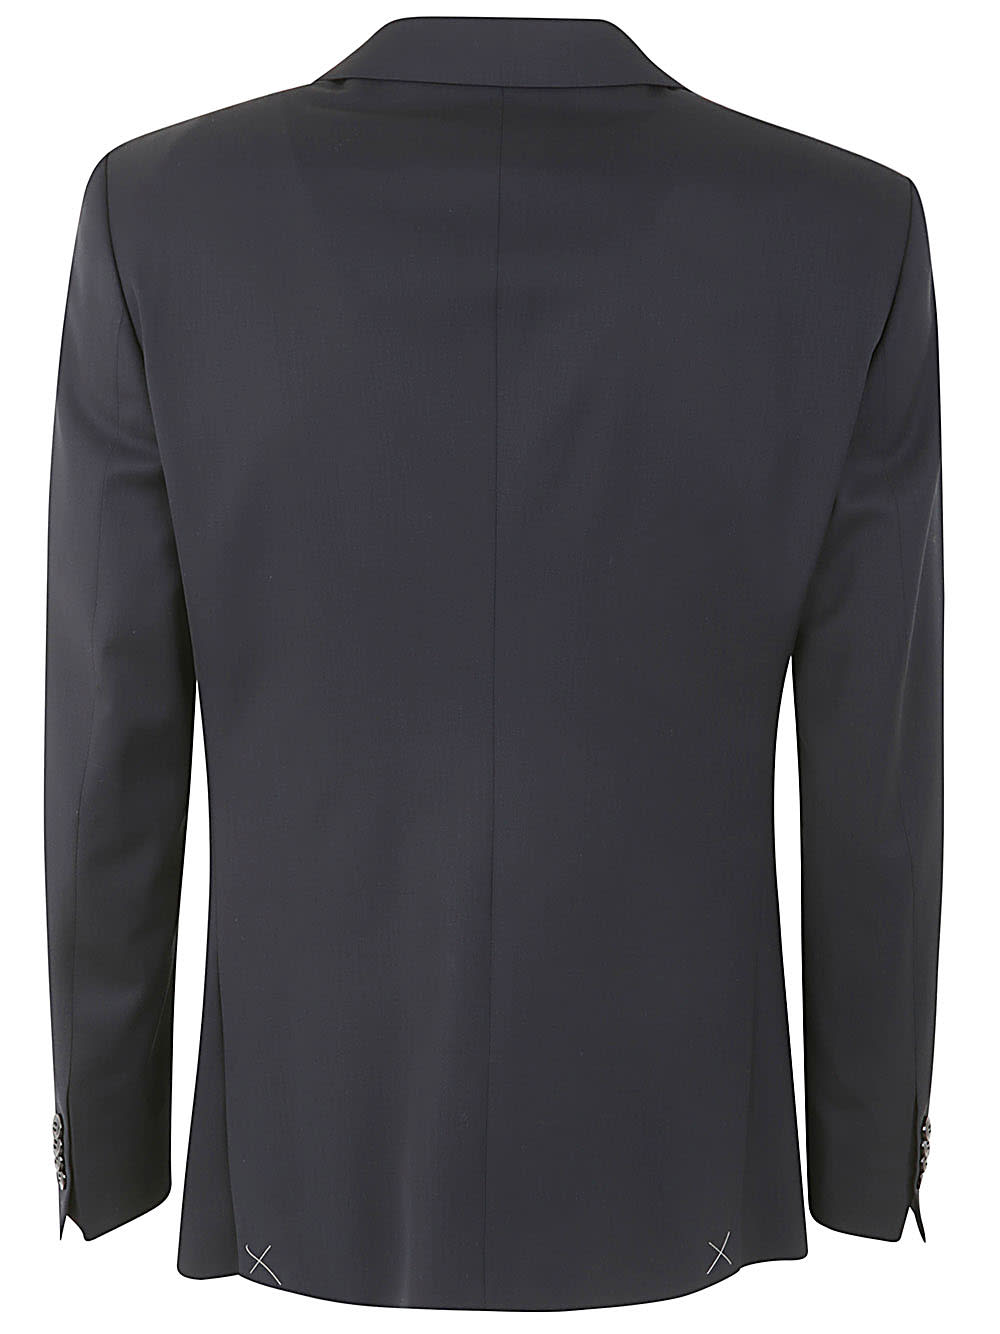 Shop Giorgio Armani Soho Suit In Ubuv Blue